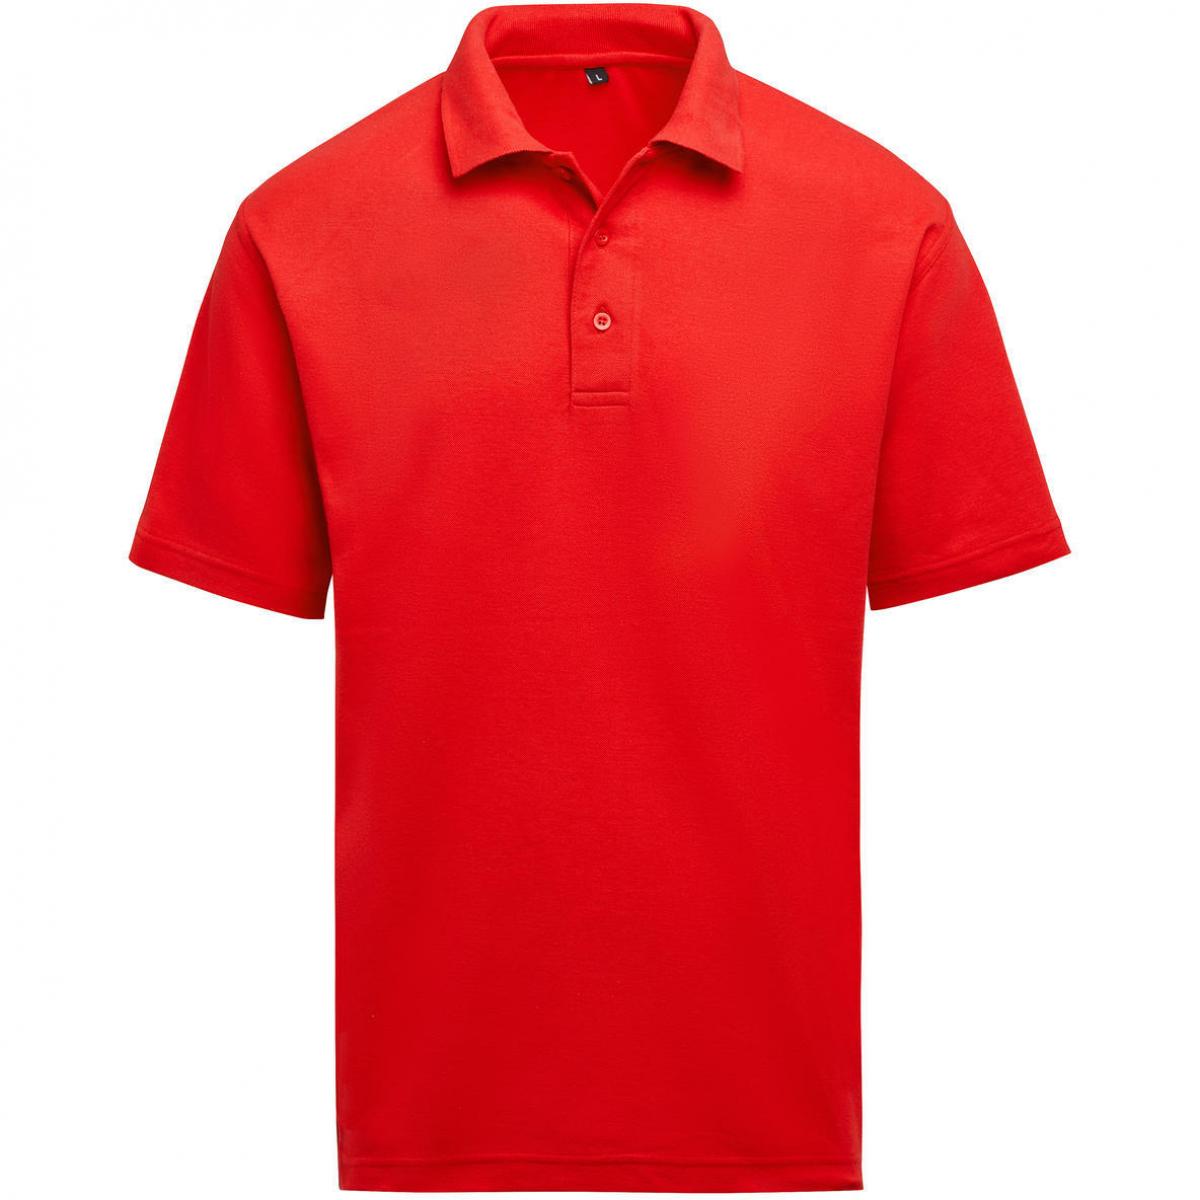 Hersteller: SG Herstellernummer: SGE501 Artikelbezeichnung: Unisex Poloshirt - Workwear - 60°C waschbar Farbe: Red